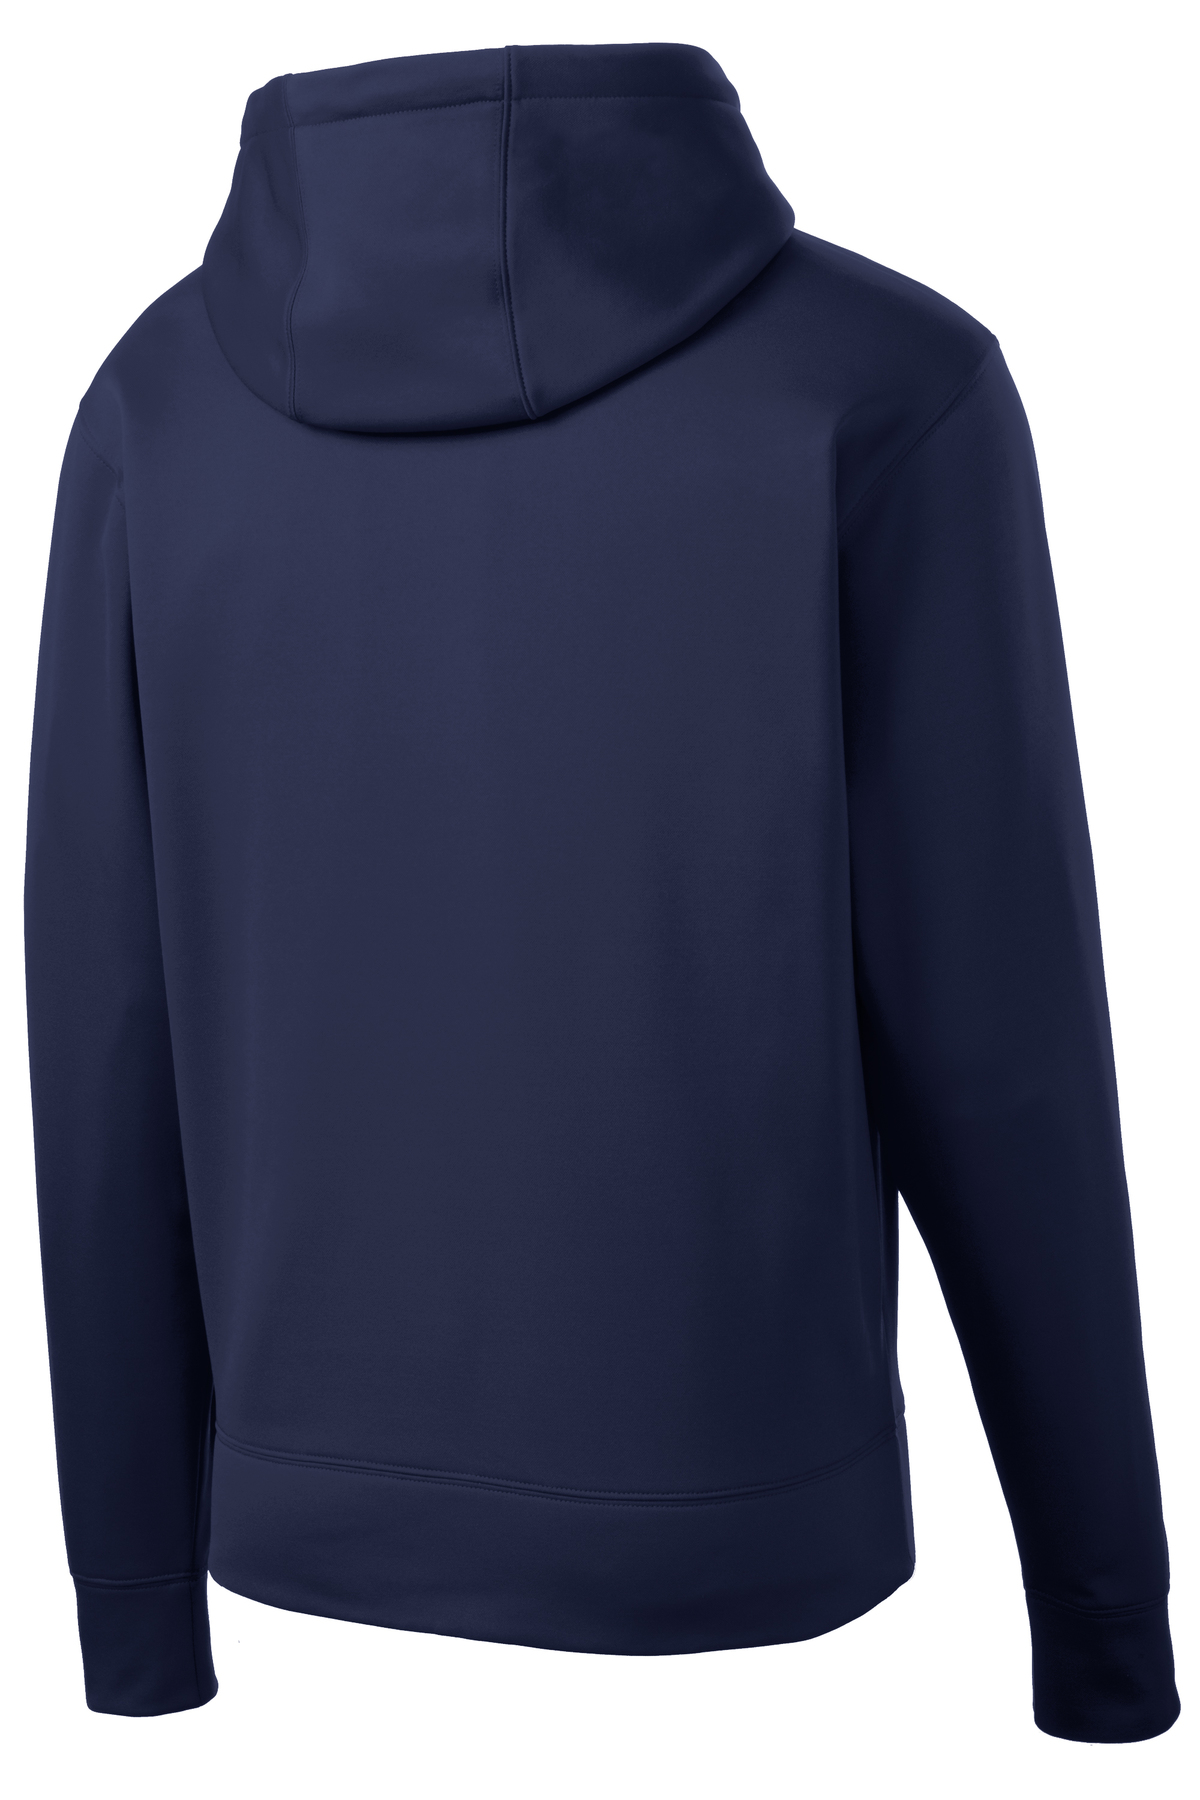 Sport-Tek Sport-Wick Fleece Full-Zip Hooded Jacket | Product | SanMar